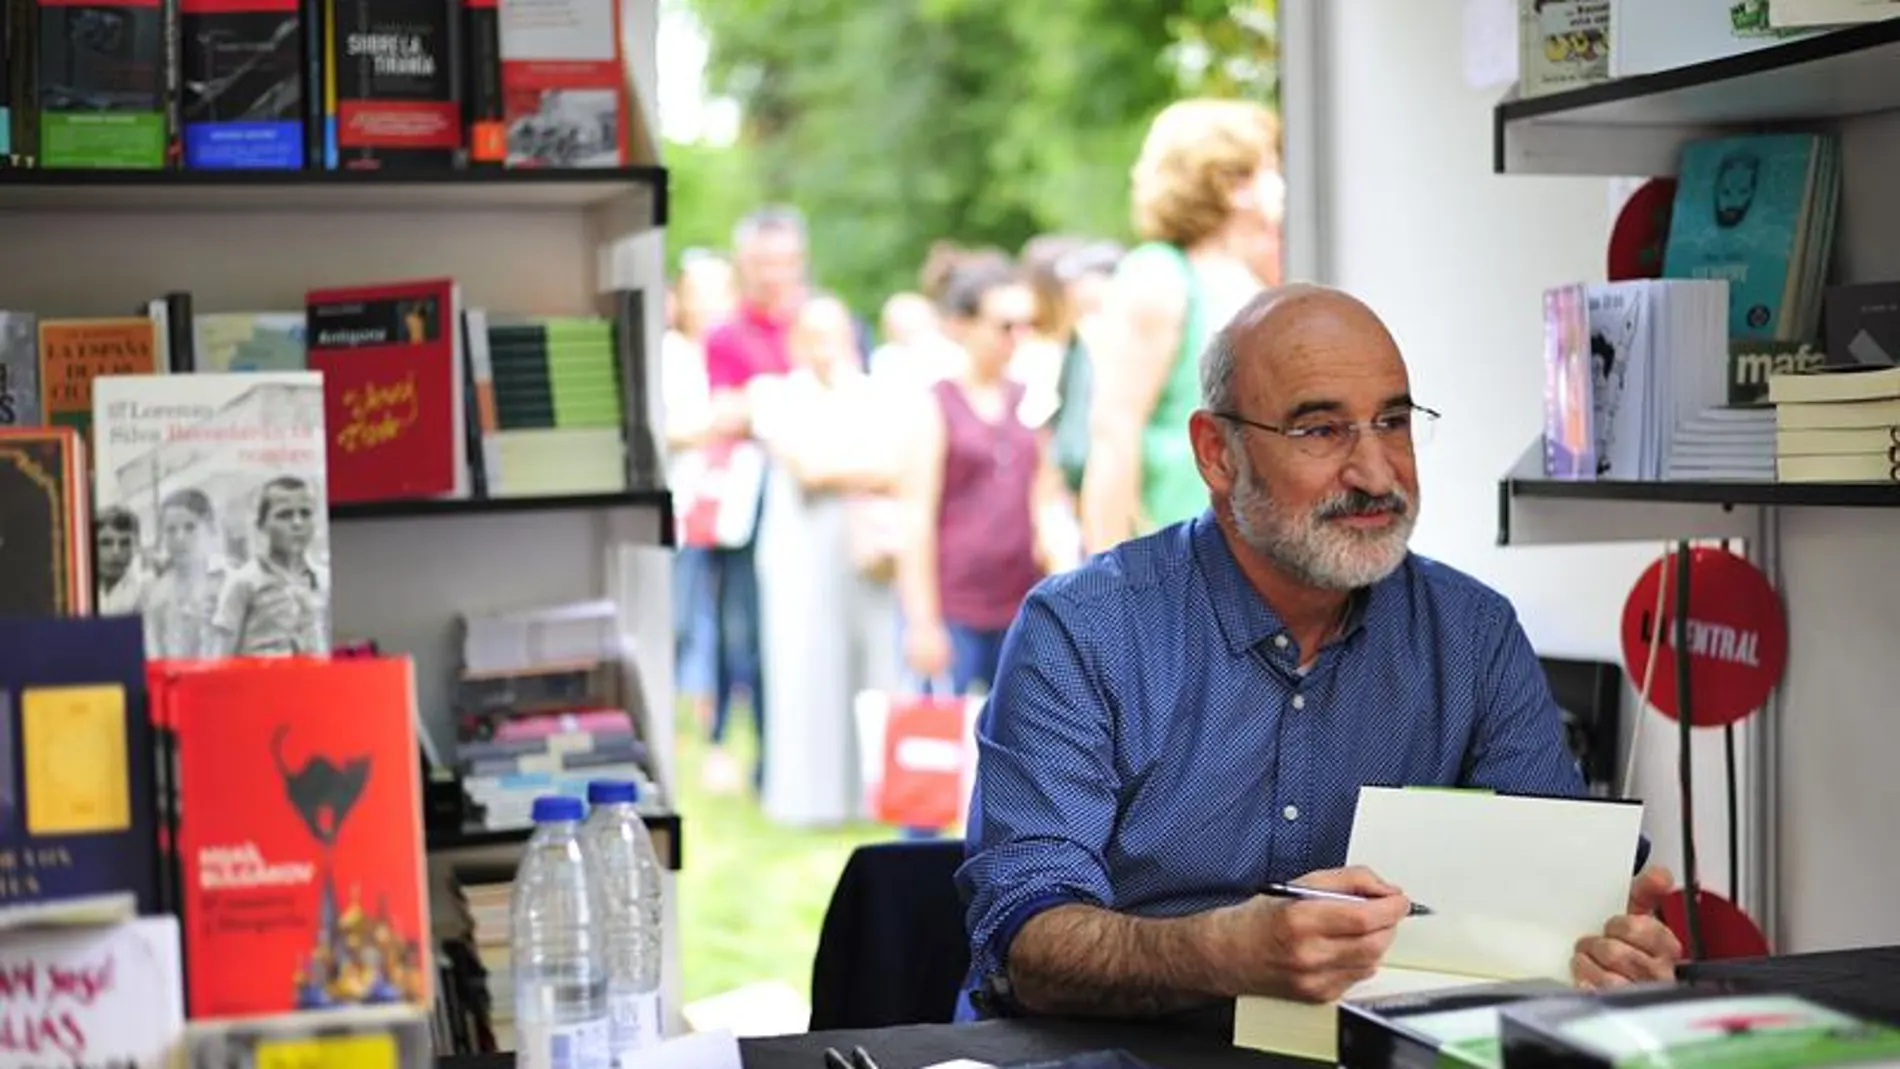 Fernando Aramburu firmando ejemplares de 'Patria' en la Feria del Libro de Madrid